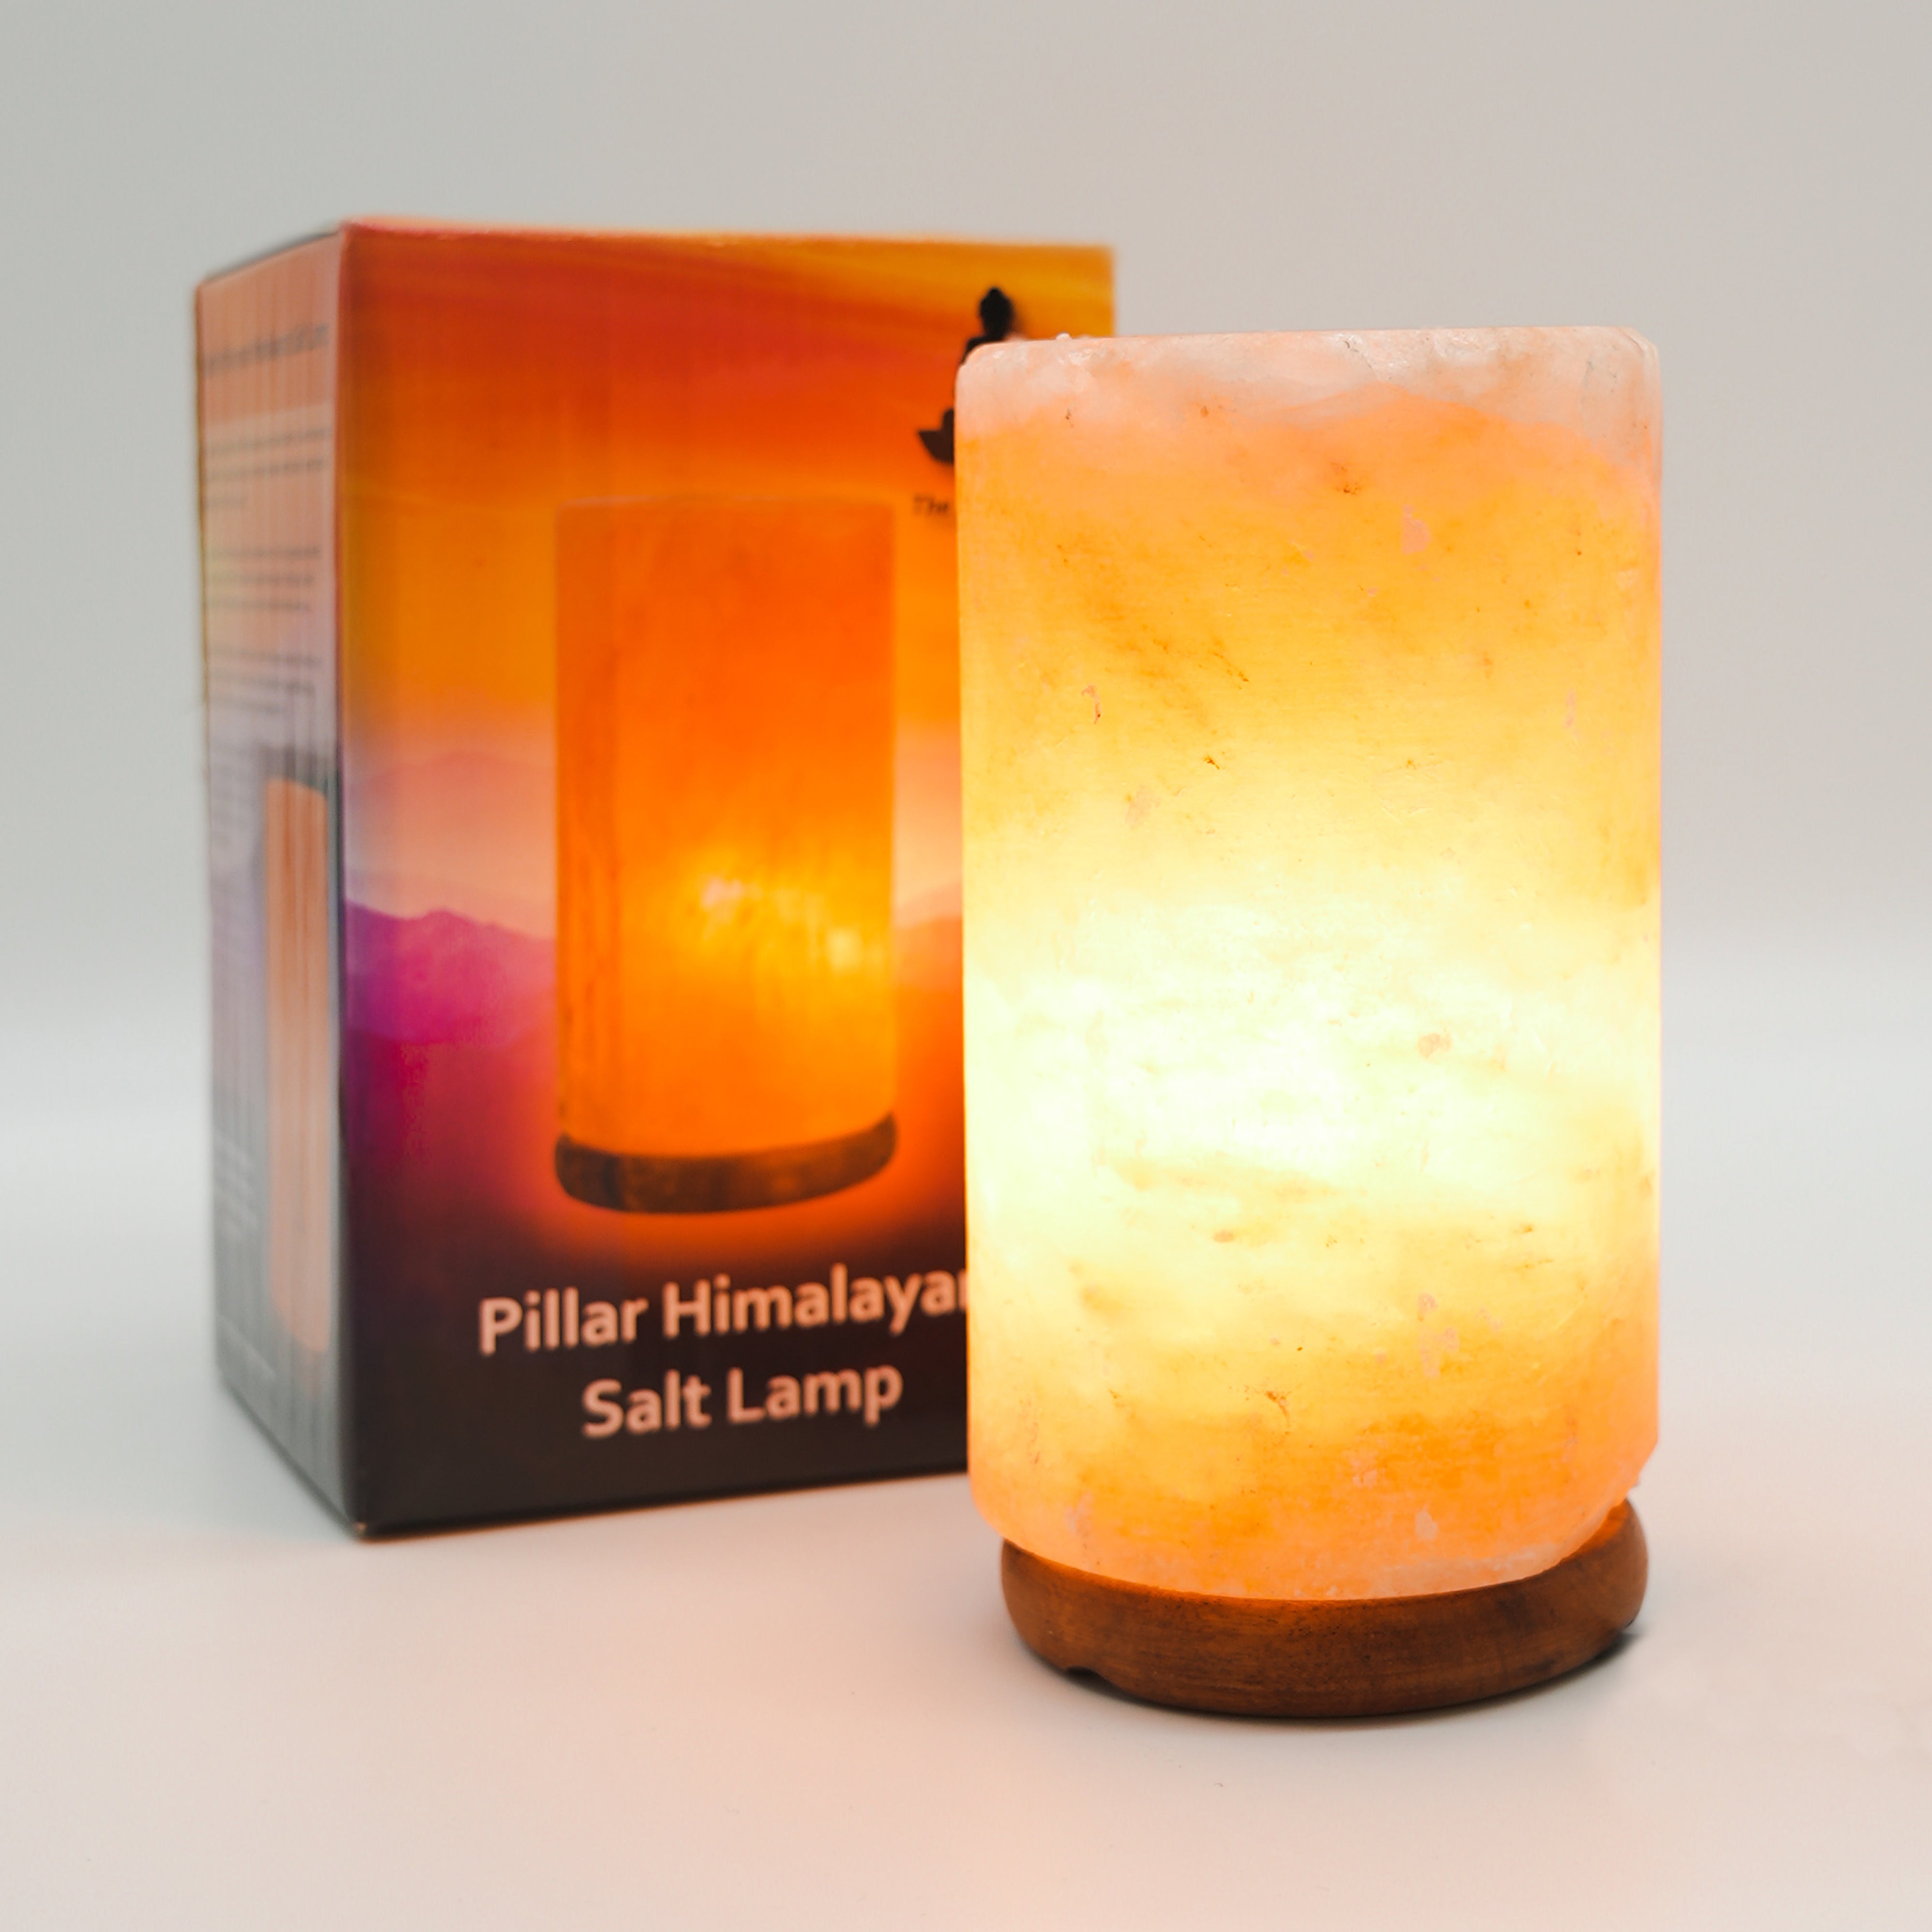 The Salt of Life - Himalayan Salt Lamp - Pillar